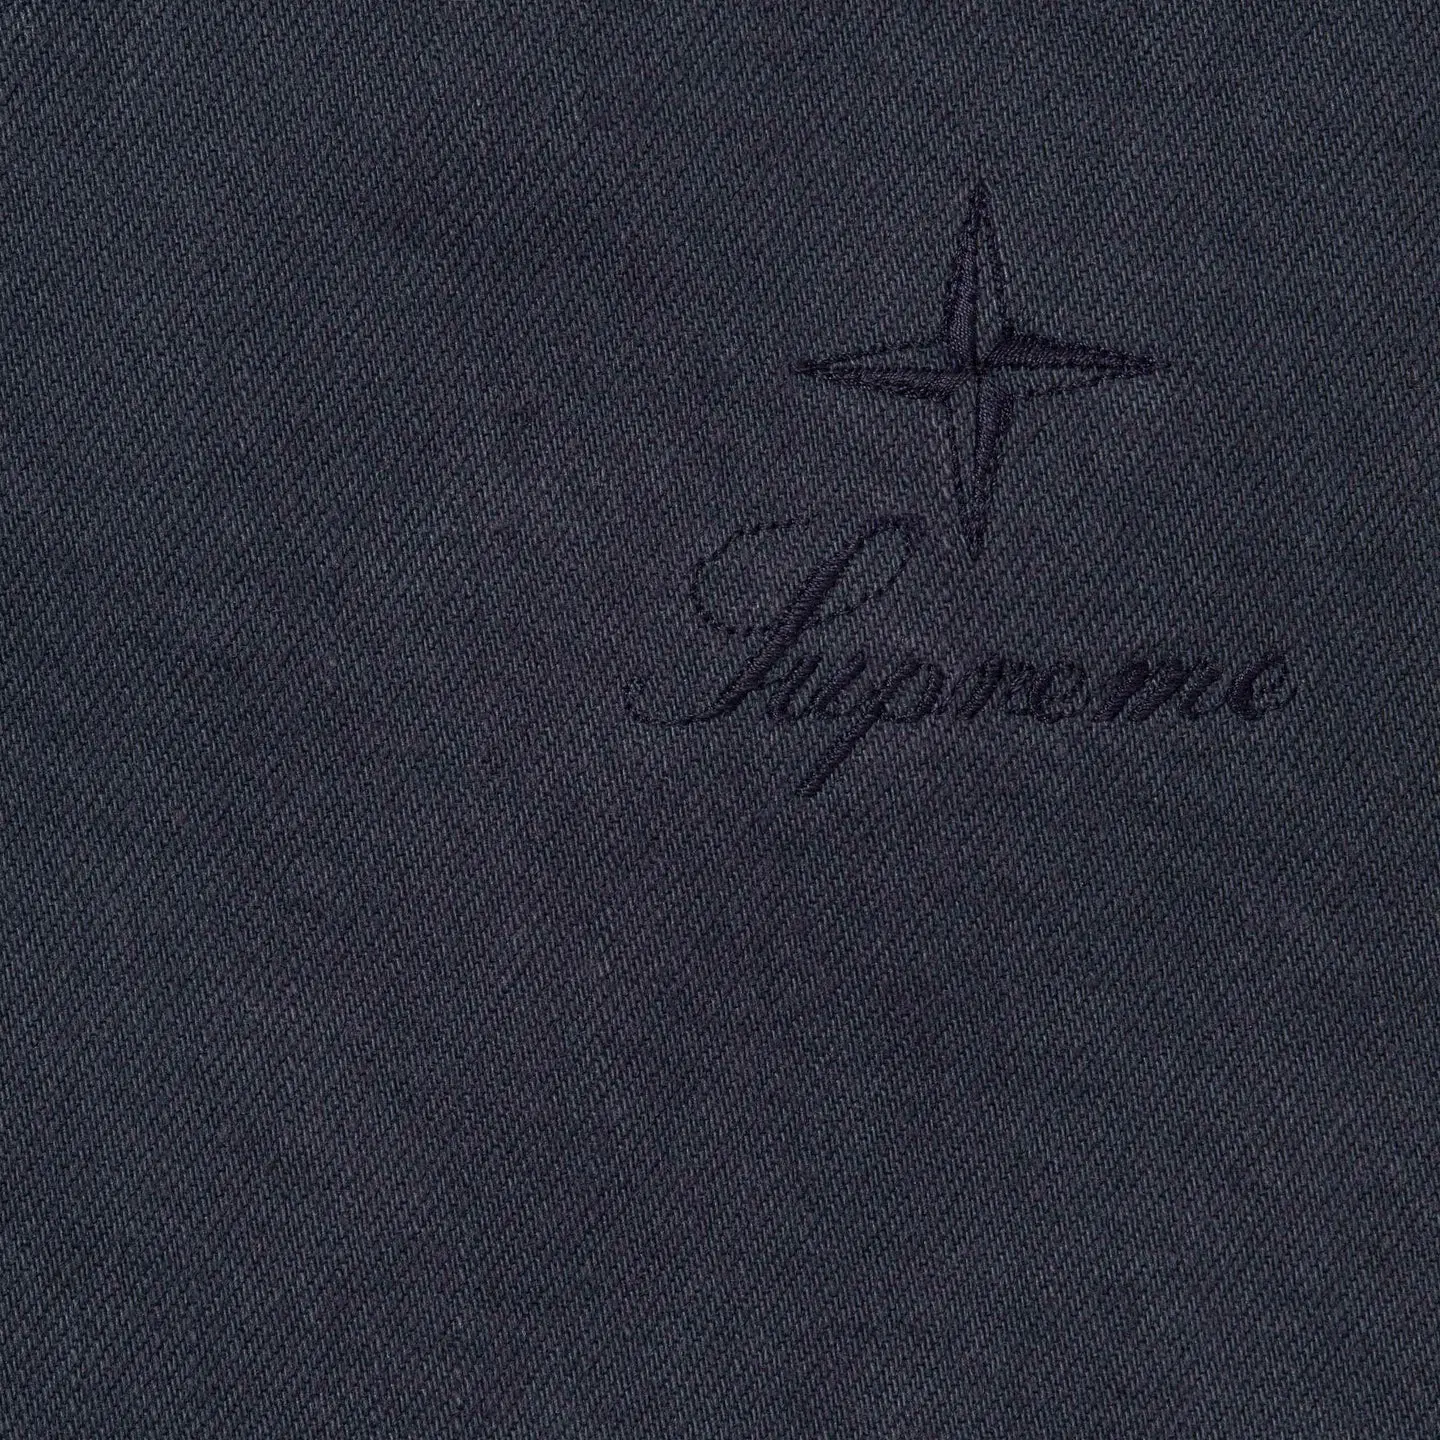 Supreme Supreme®/Stone Island® 5-Pocket Jean